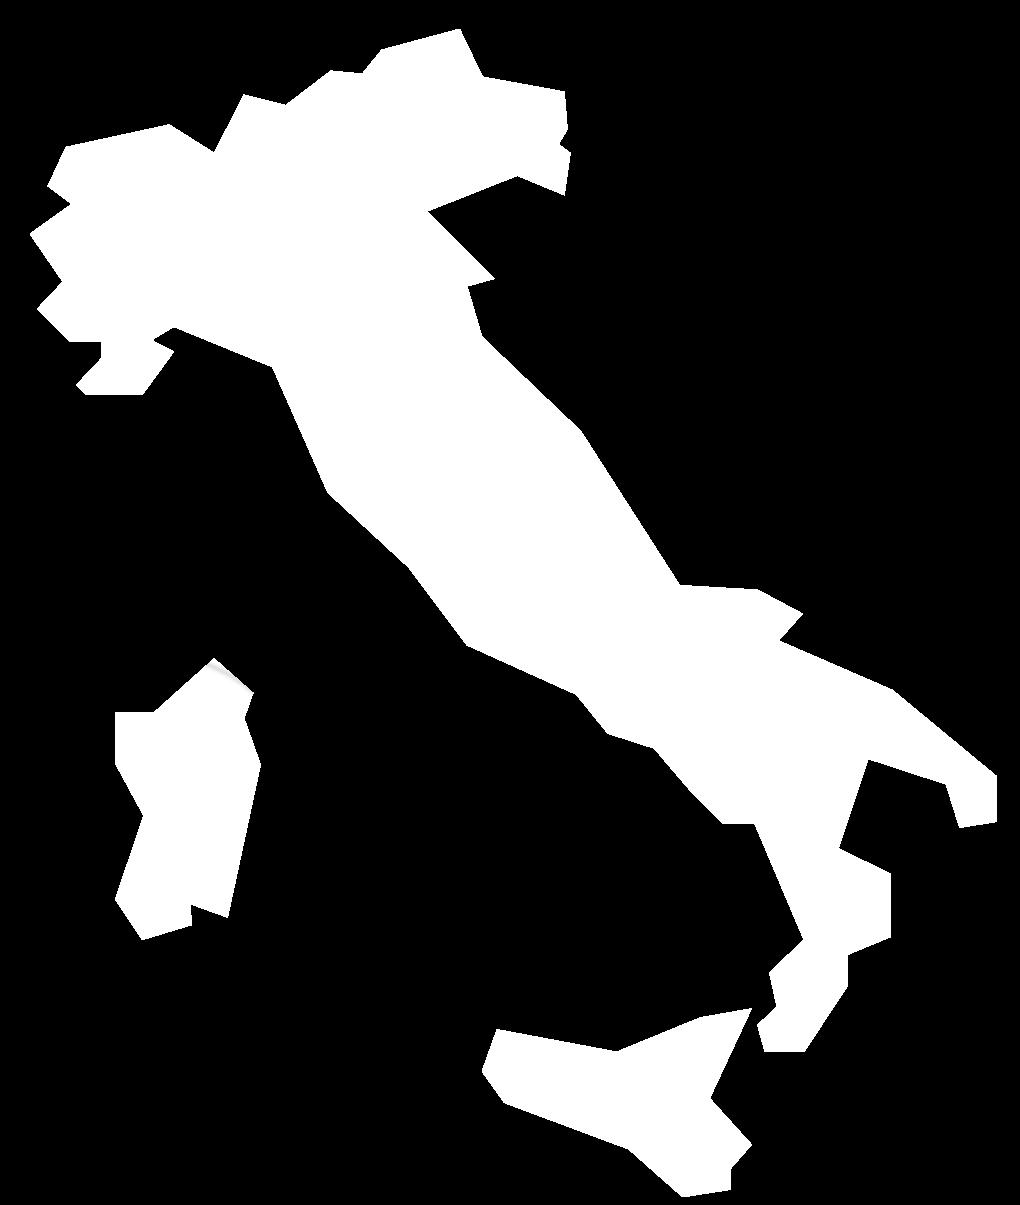 PRIME 5 AZIENDE DEL SETTORE / INCIDENZA SU PIL ITALIA A PREZZI CORRENTI (IN TERMINI DIRETTI) PARMALAT S.P.A. 0,057% GRANAROLO S.P.A. 0,053% GALBANI S.R.L. 0,042% ITALATTE S.R.L. 0,017% STERILGARDA S.